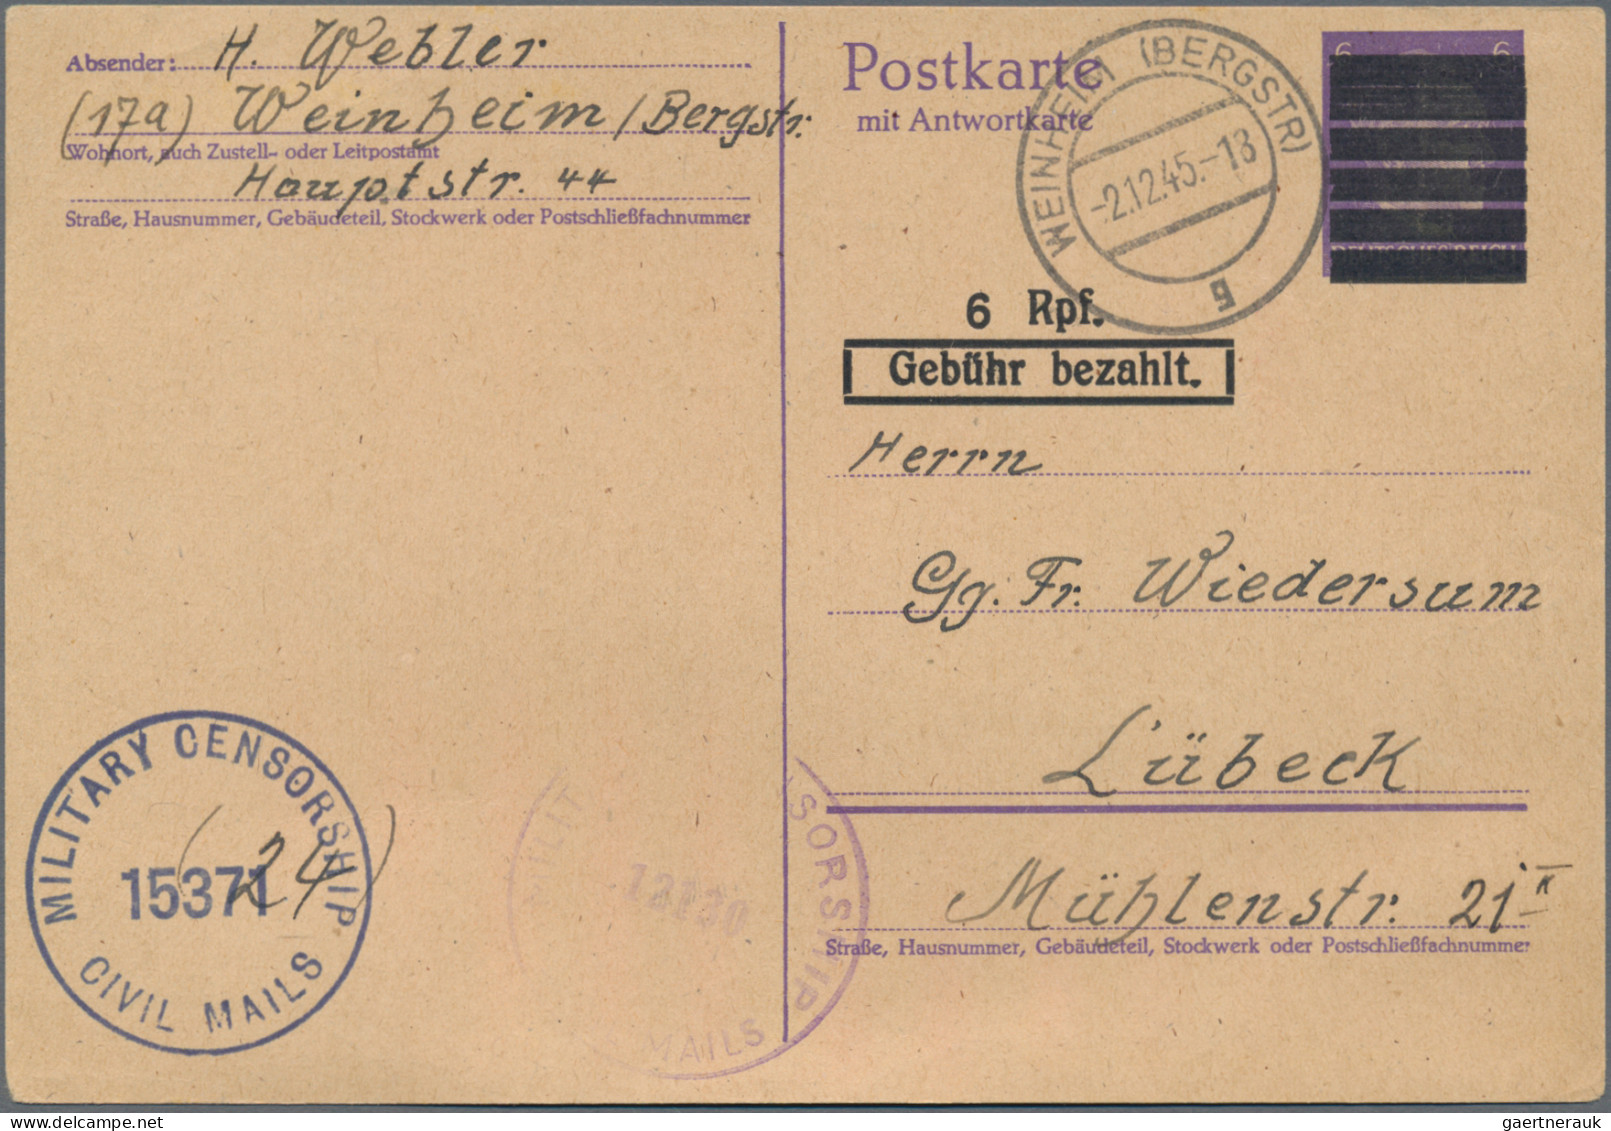 Nachlässe: 1860/1974, DEUTSCHLAND, Nachlass-Posten mit Briefen, Karten und Ganzs